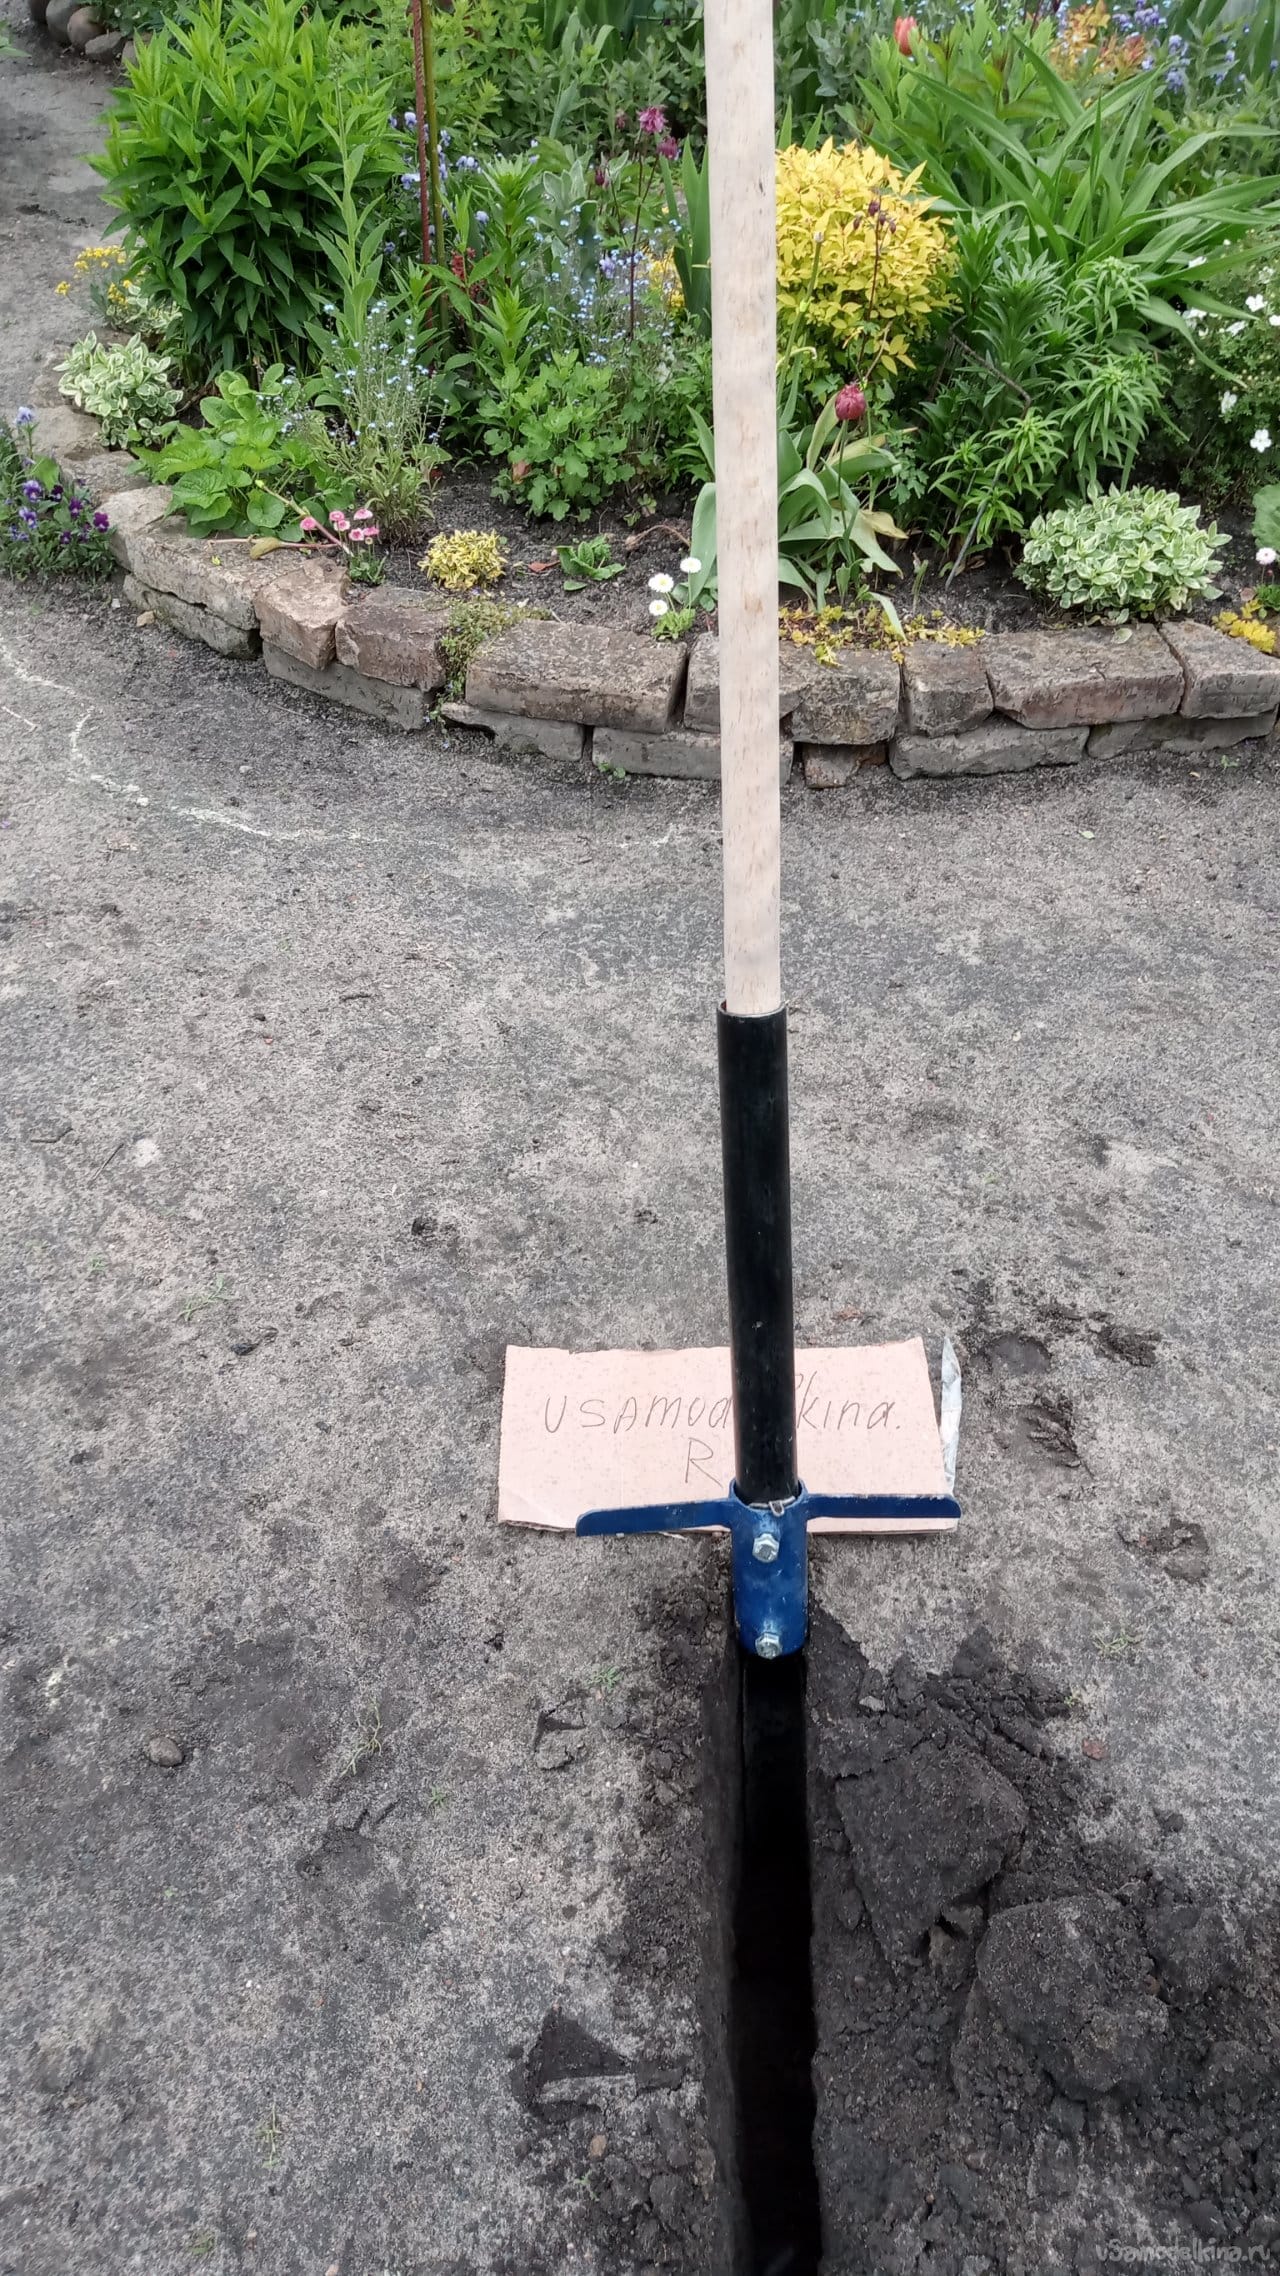 Лопата для прокладки кабеля, из водопроводной трубы